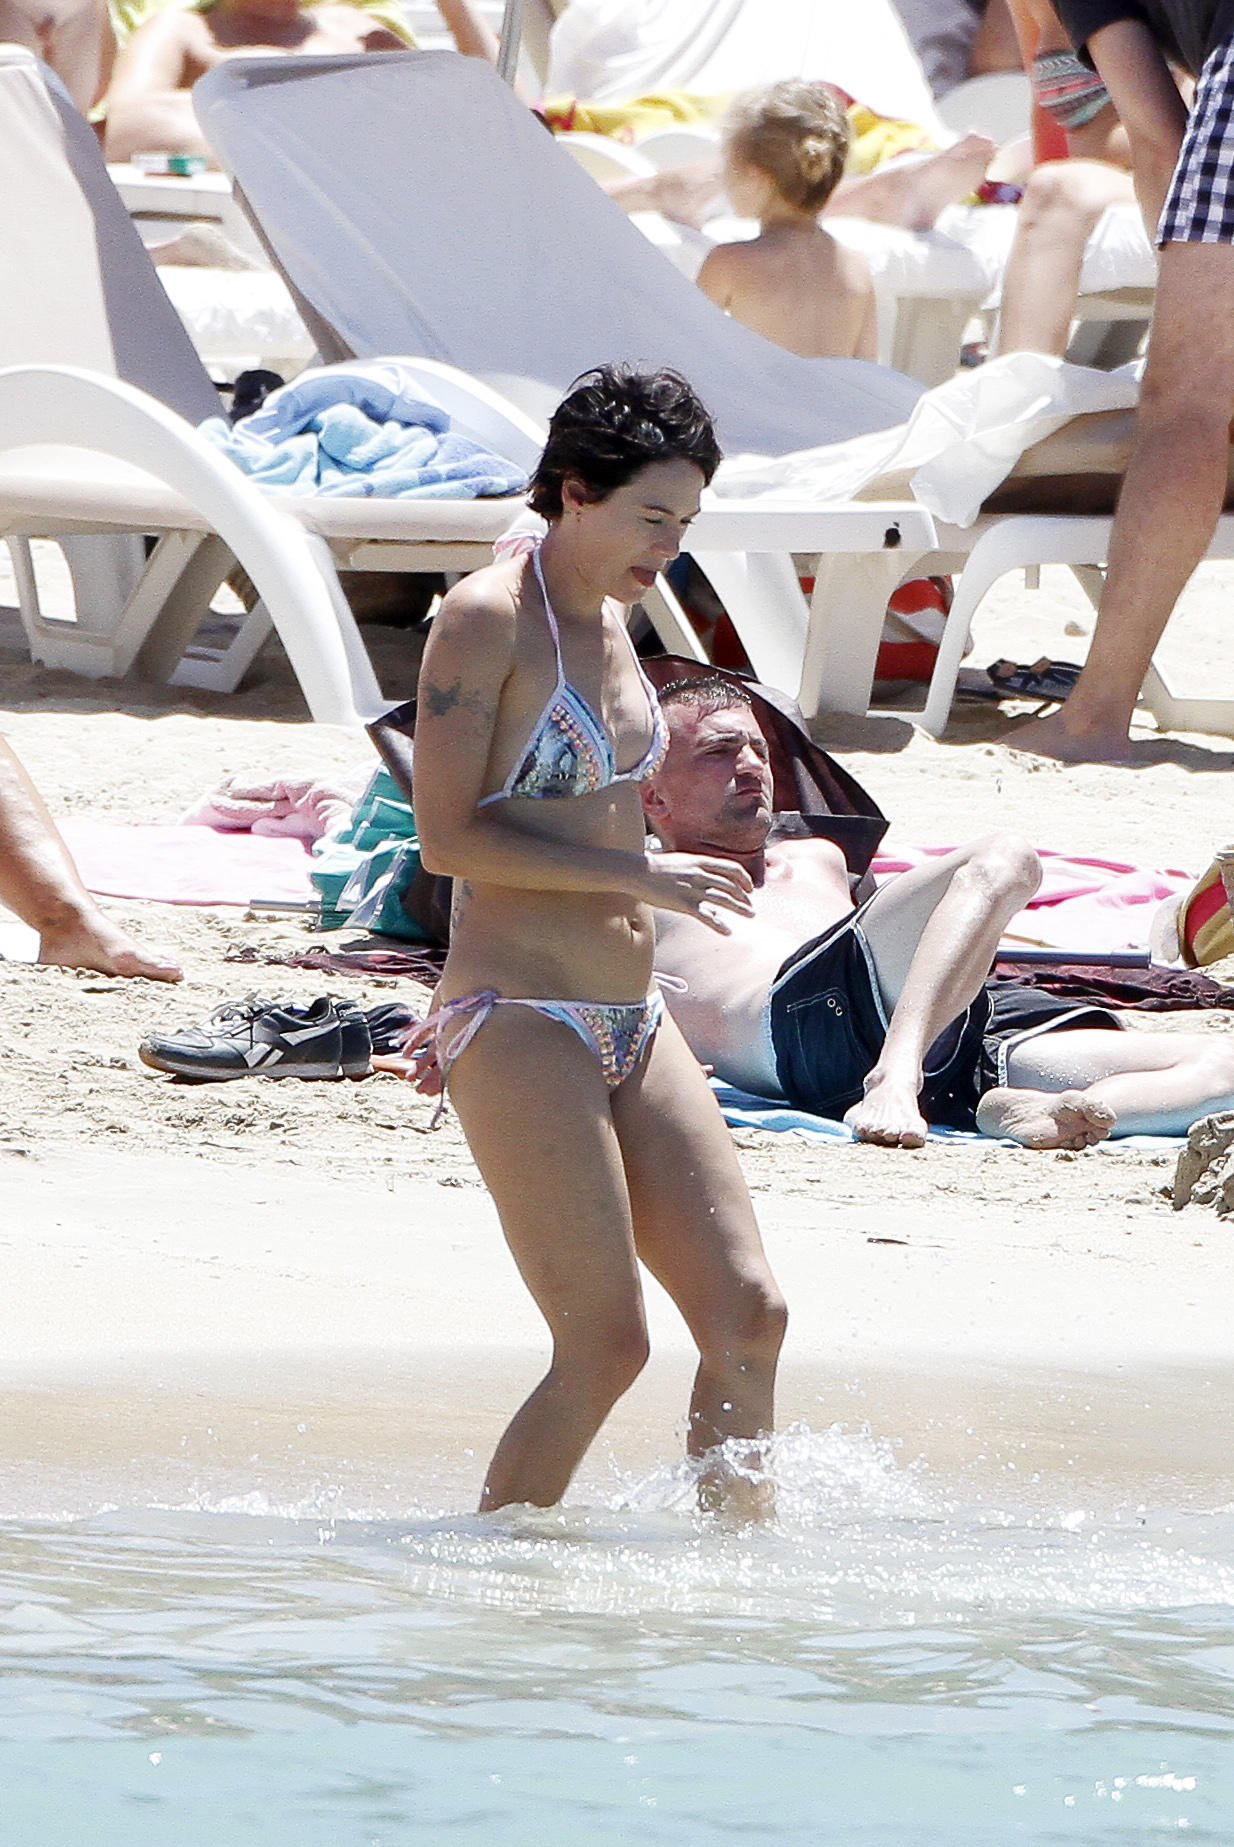 Lena Headey Bikini Photos: at a beach in Ibiza.